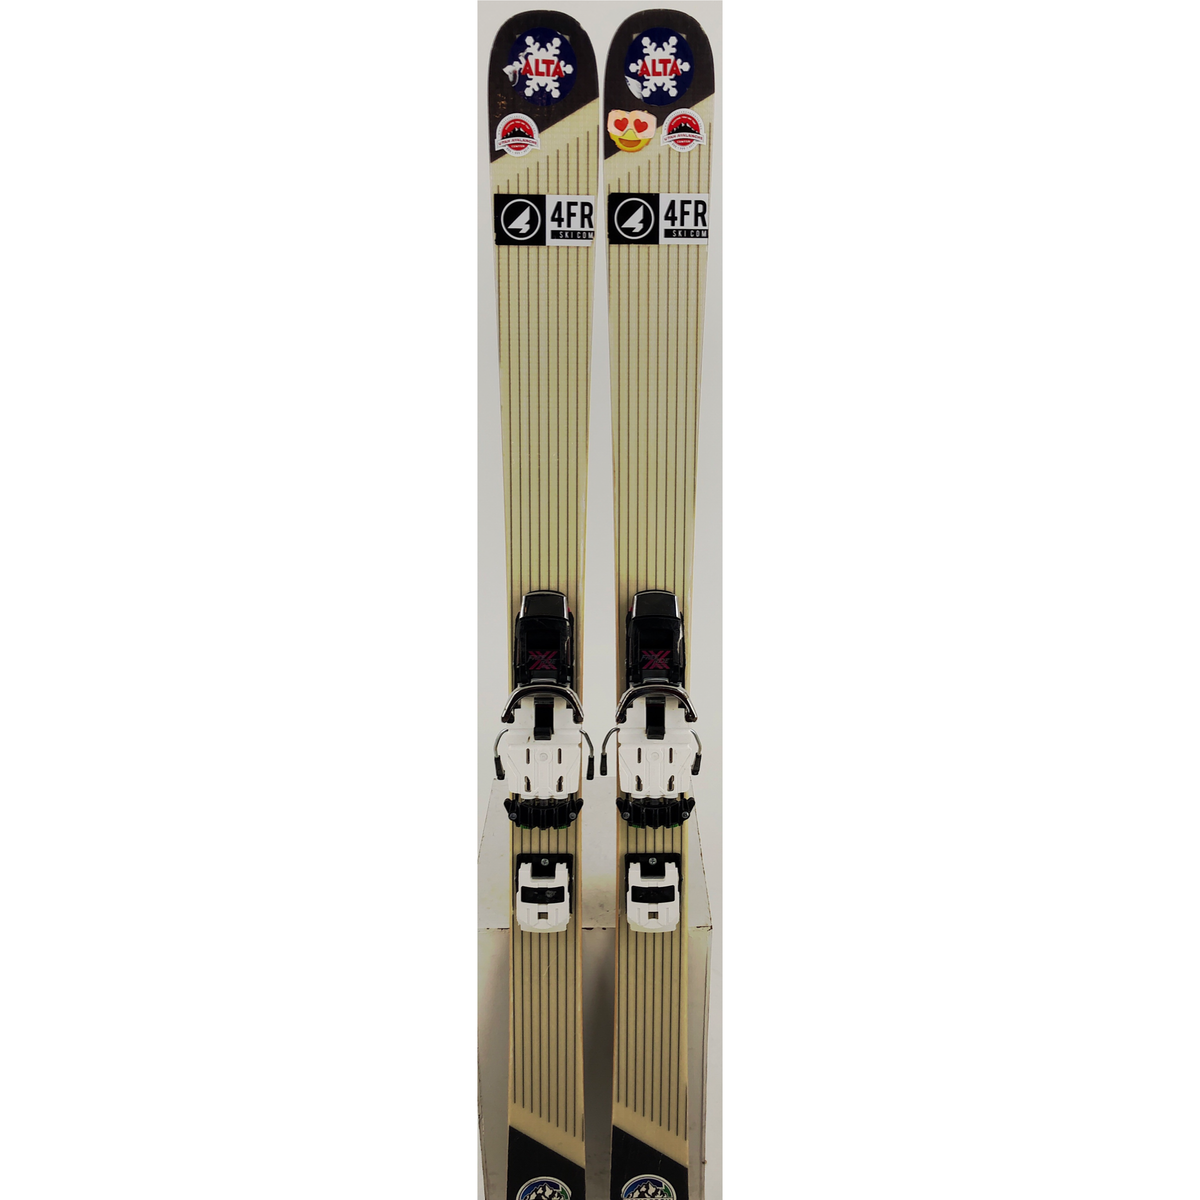 159cm Ramp Skis w/ Freeride Sm (Used)